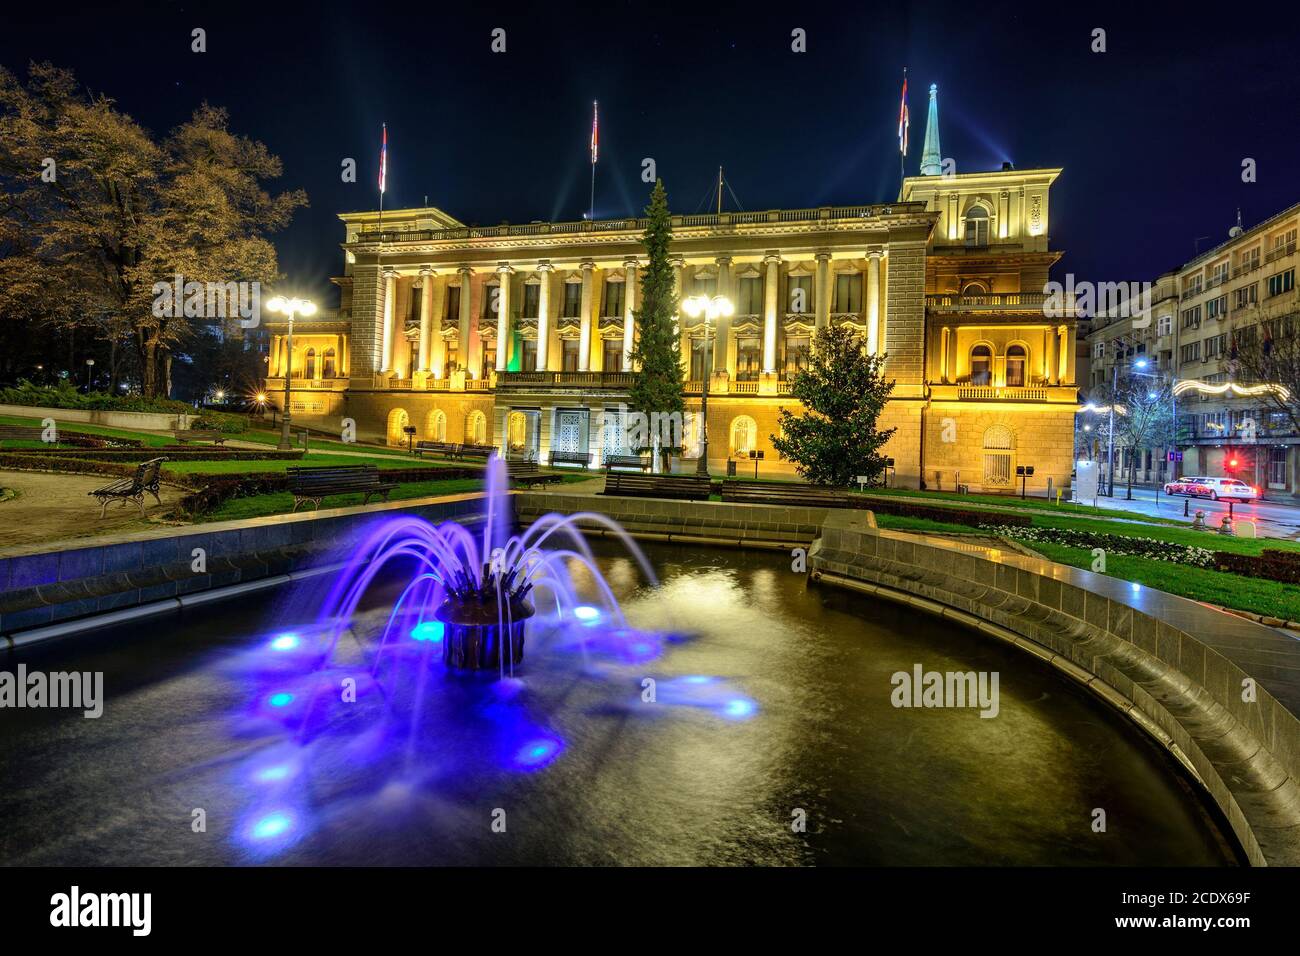 Belgrado / Serbia - 11 novembre 2016: Nuovo Palazzo, ex residenza reale del Regno di Serbia e poi Regno di Jugoslavia. Oggi è il se Foto Stock